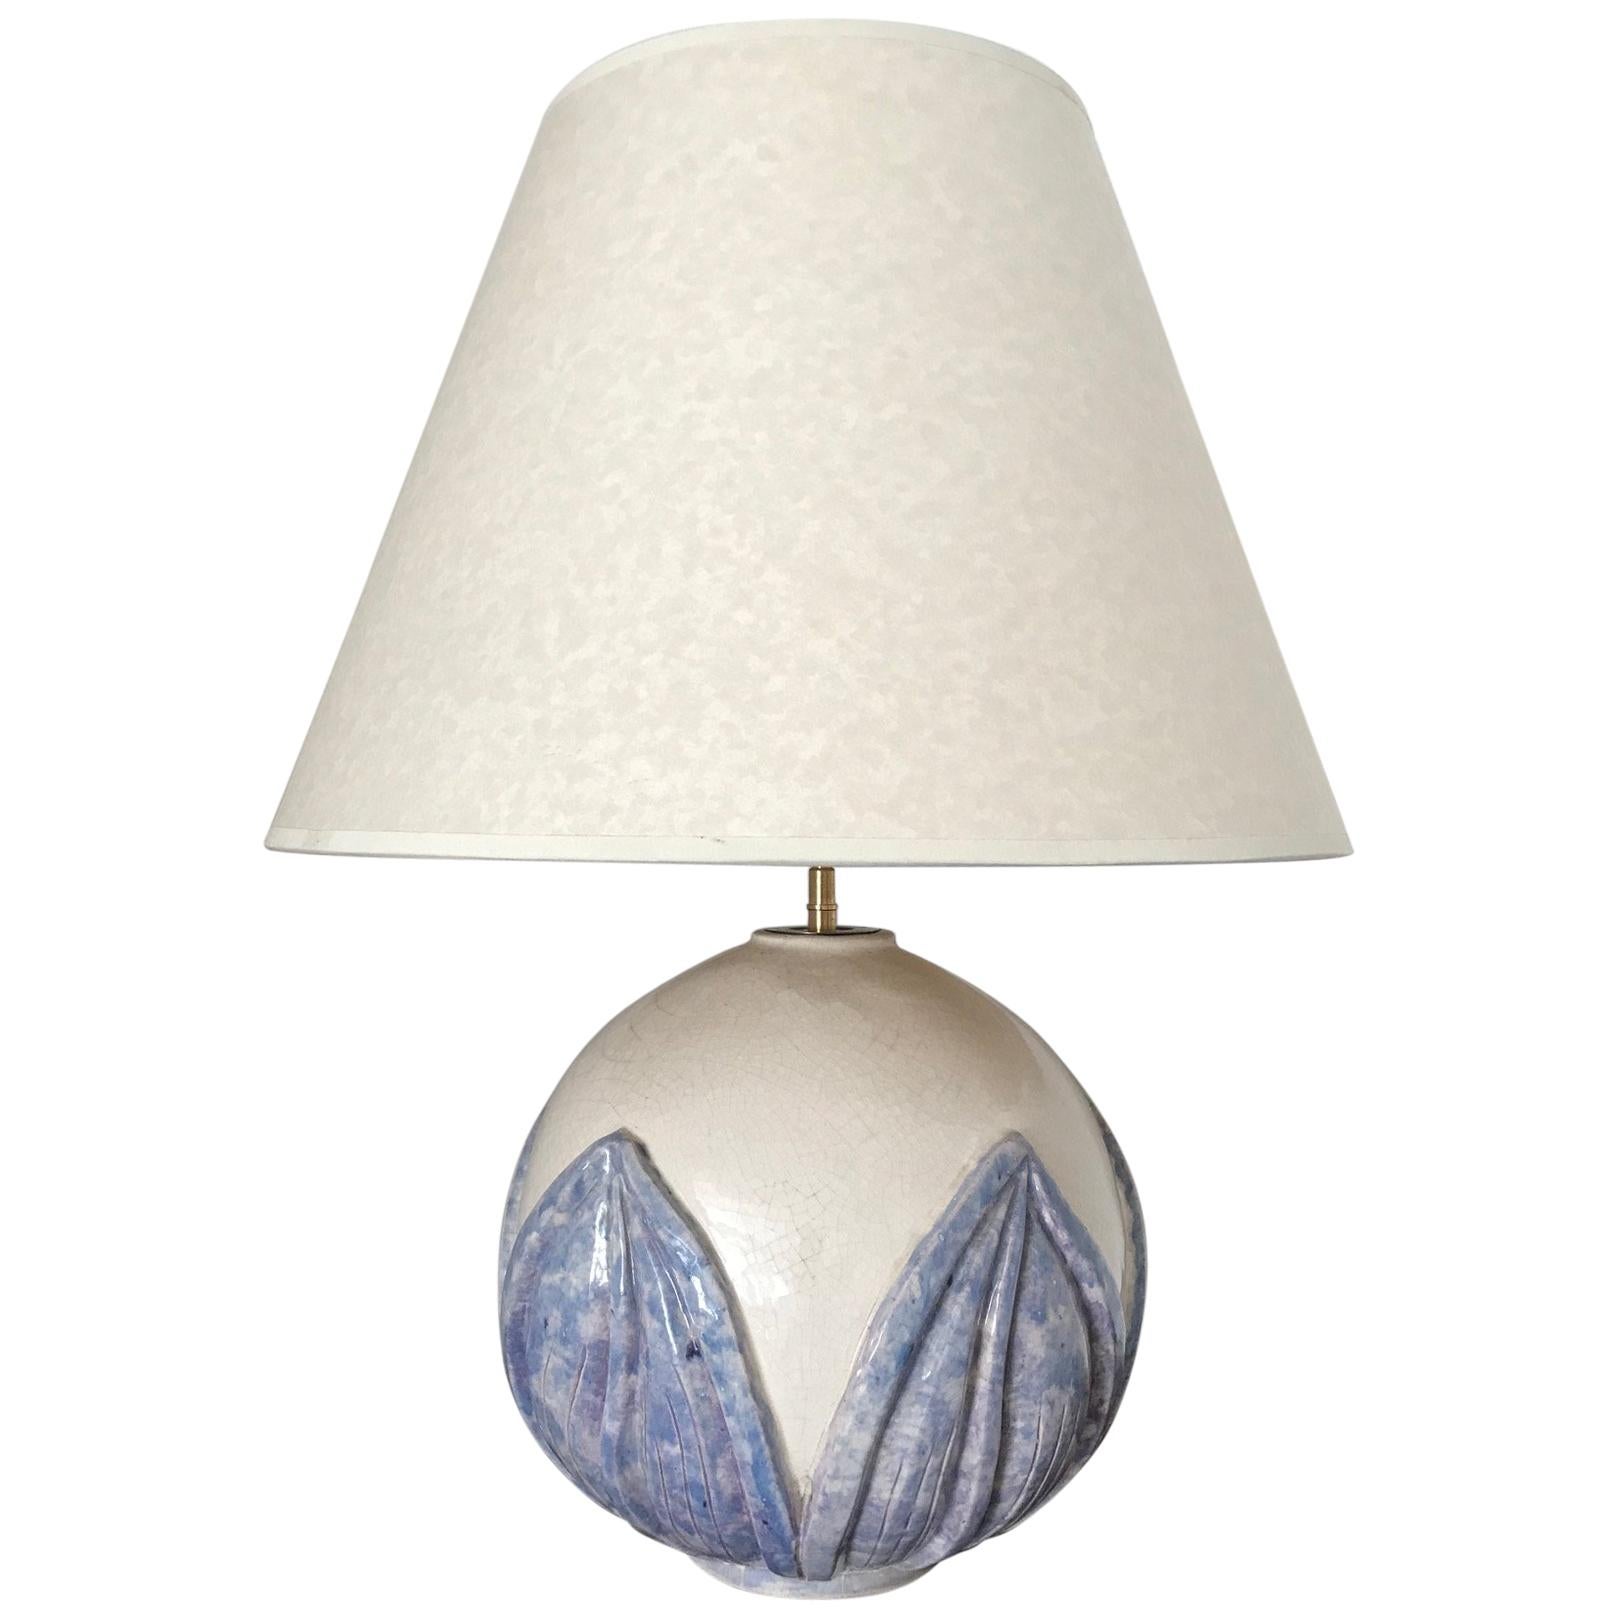 1930s French Ceramic Globe Lamp For Sale